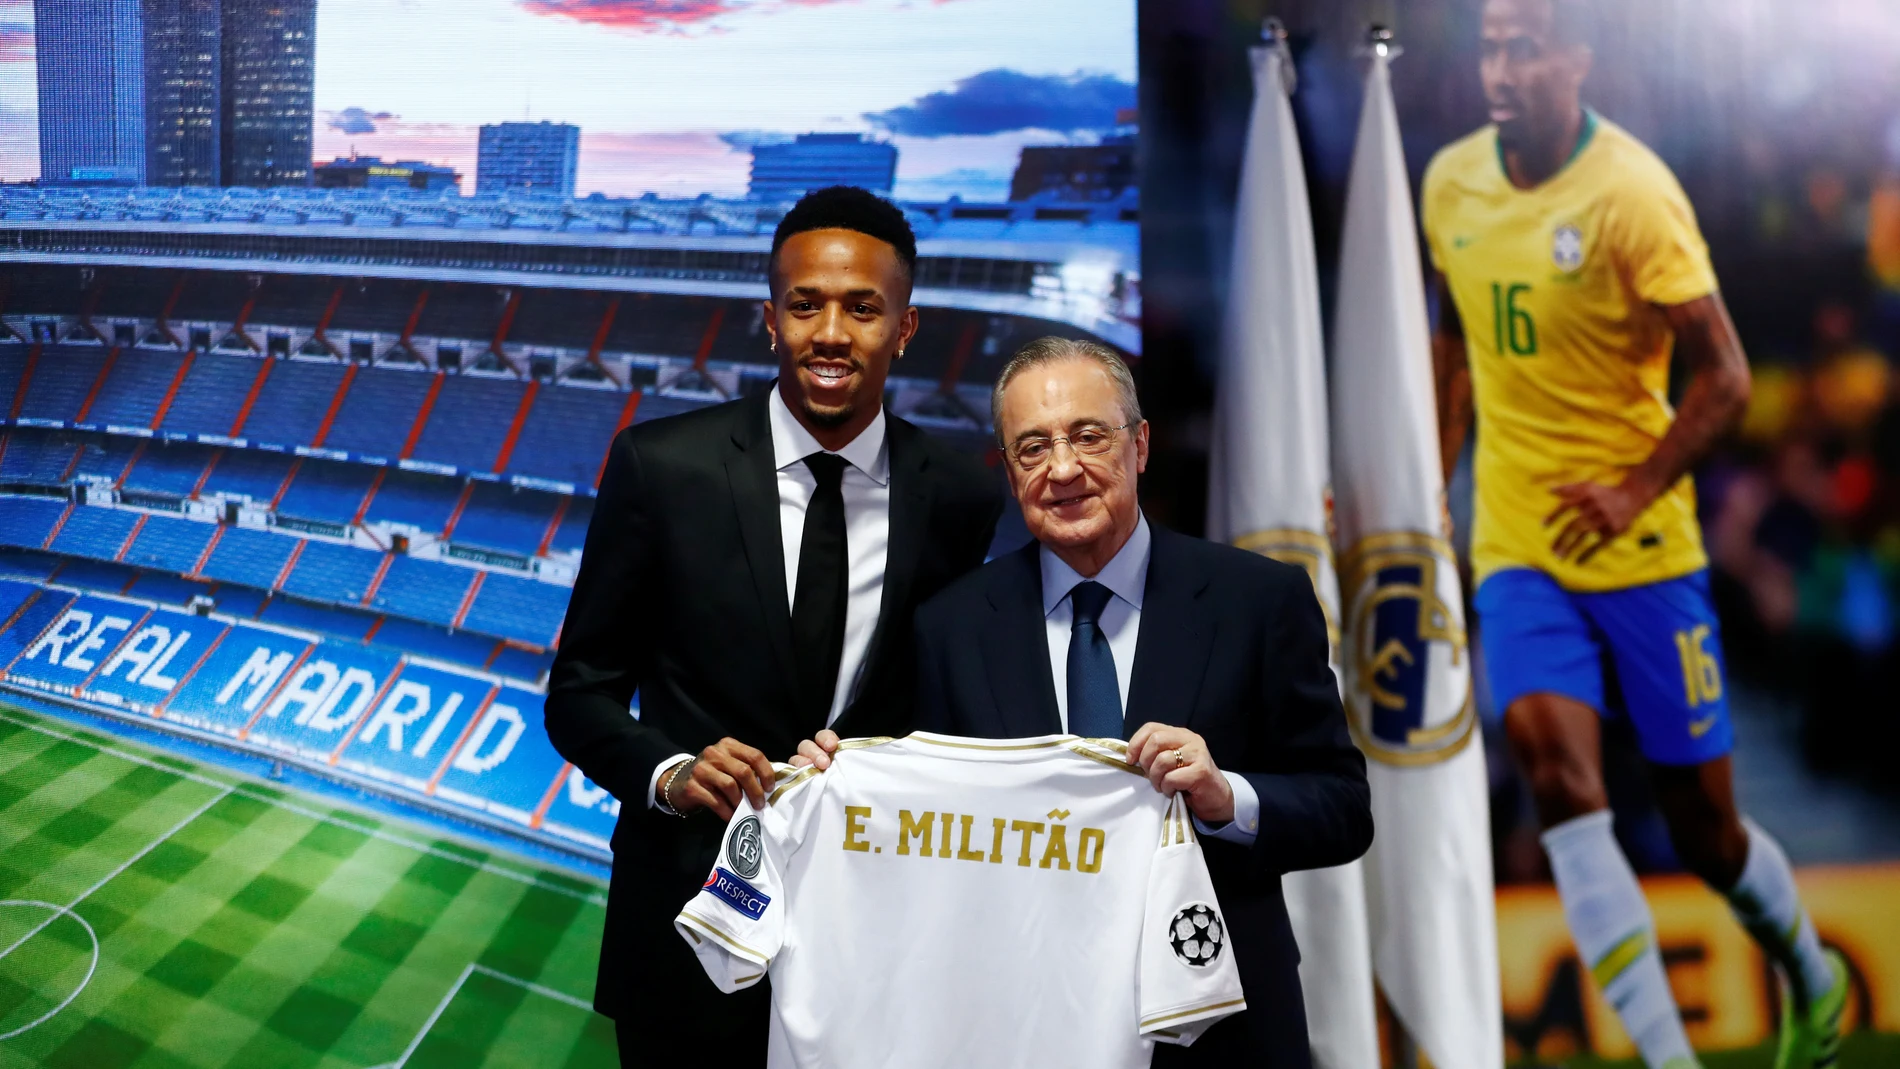 Militao, presentado como nuevo jugador del Real Madrid